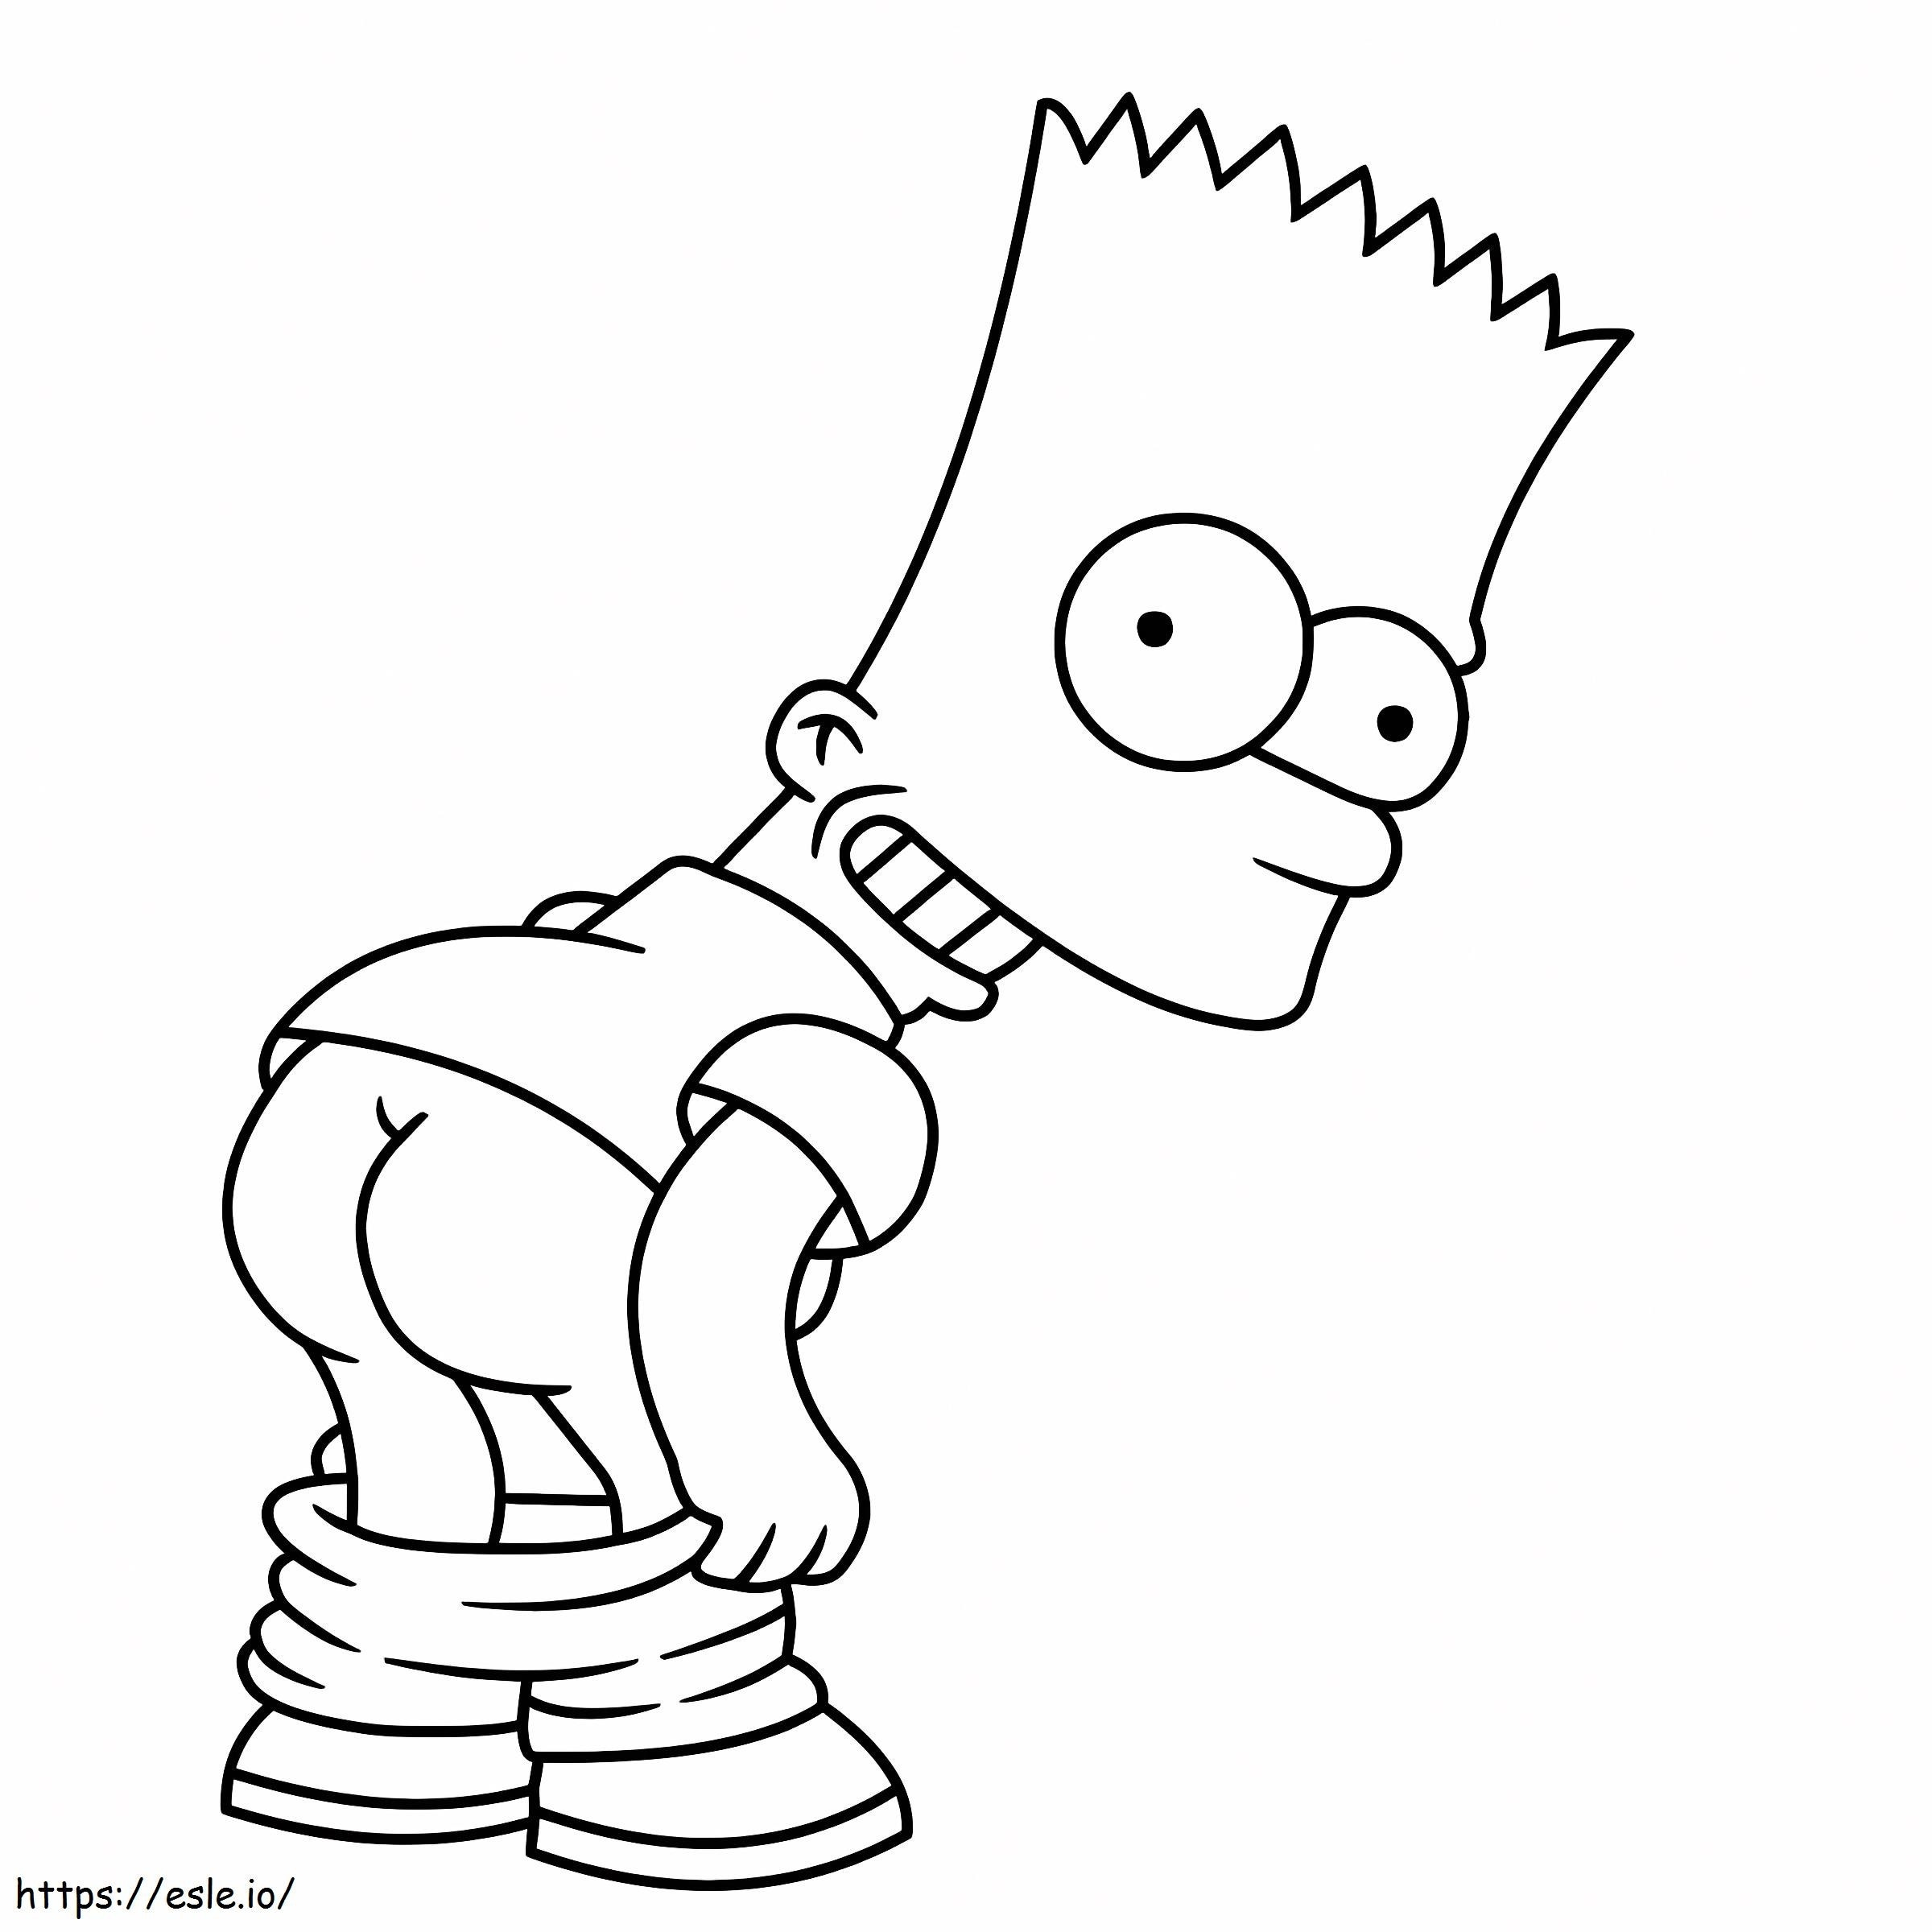 Bart Simpson jest kolorowanka